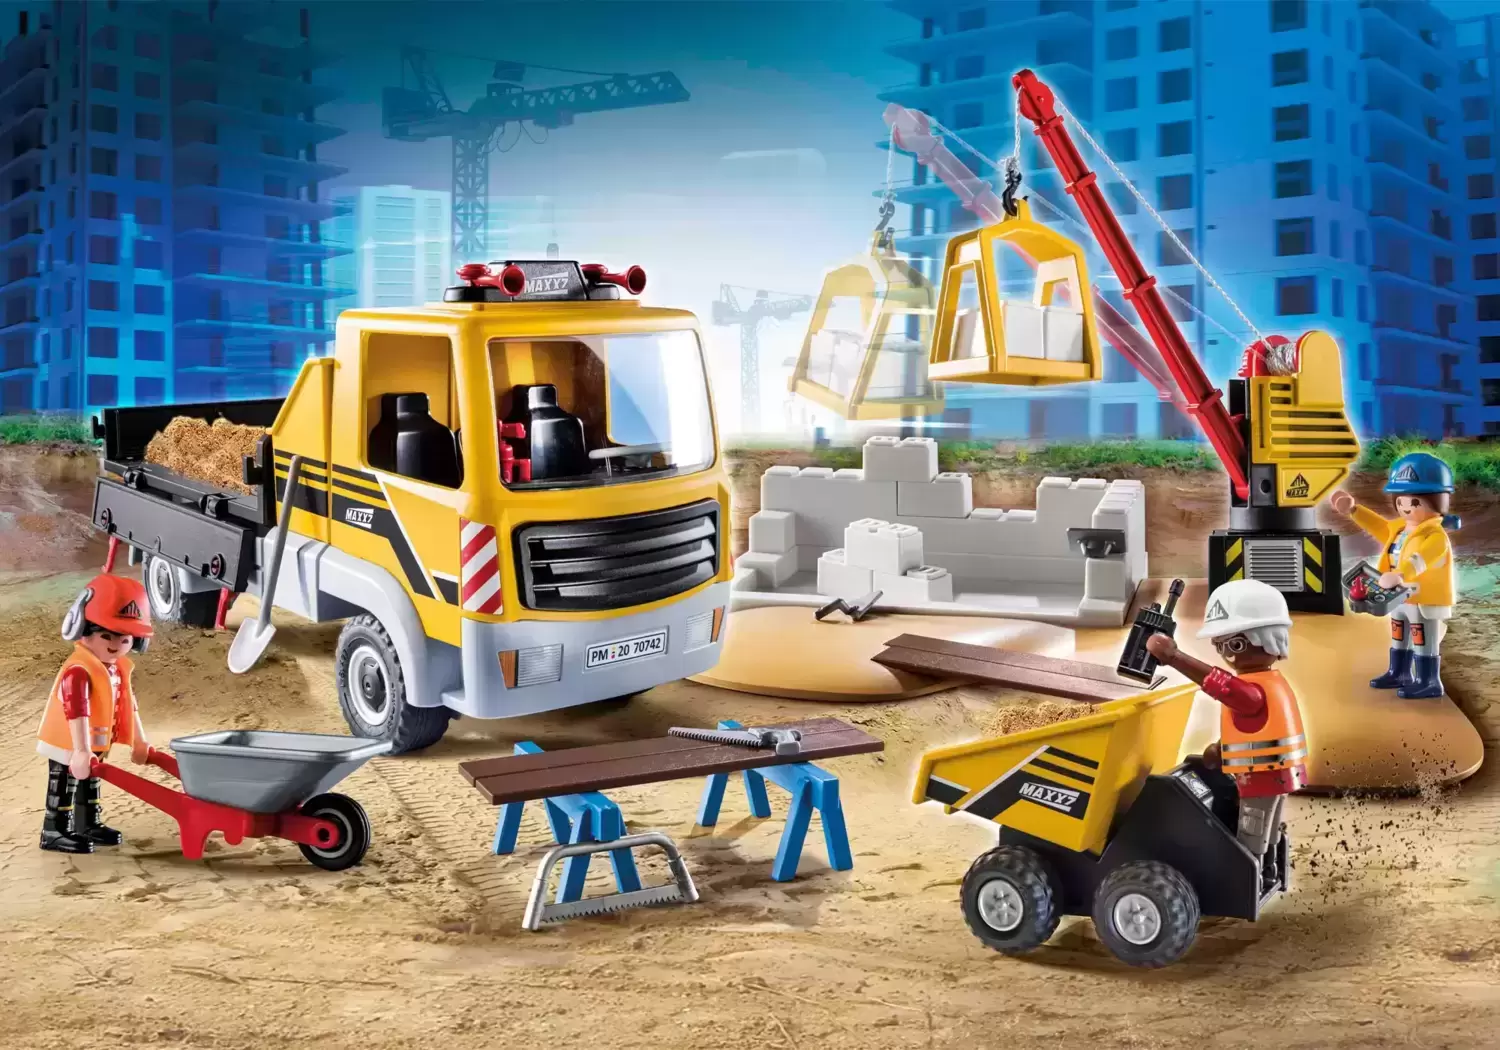 Playmobil Chantier - Site de travaux avec camion et ouvriers